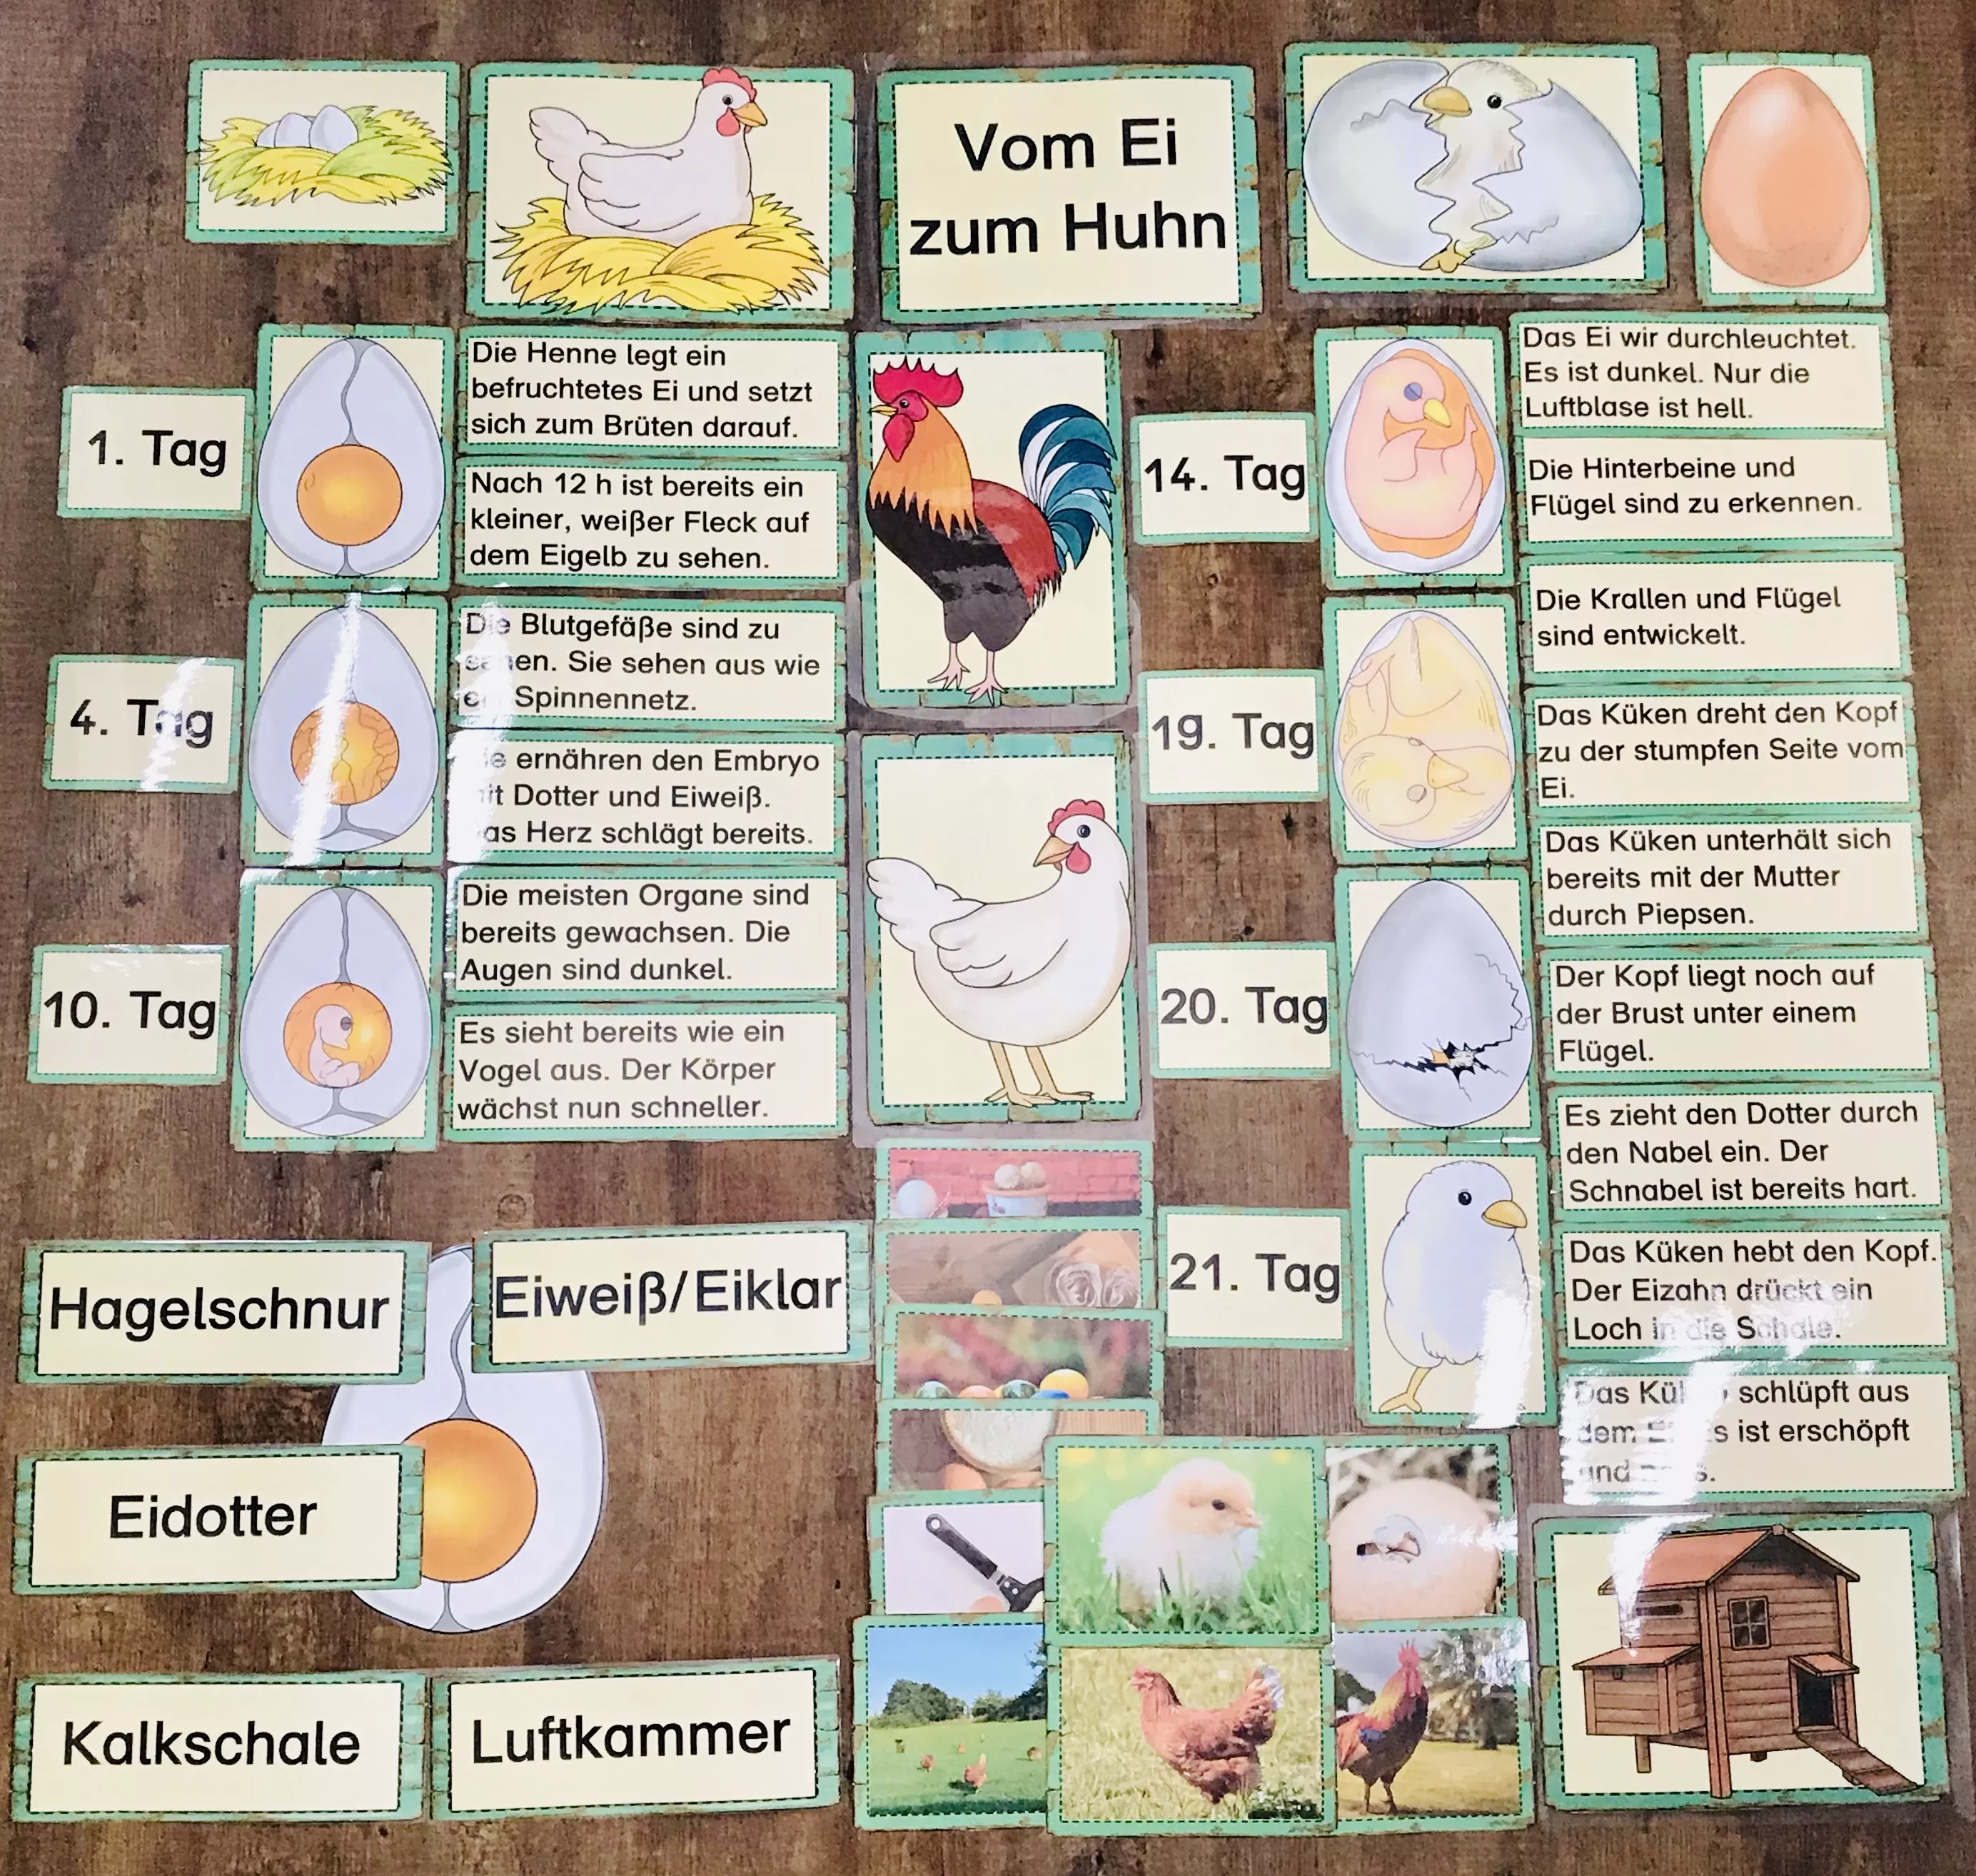 Tafelmaterial Vom Ei zum Huhn – Unterrichtsmaterial im Fach Sachunterricht